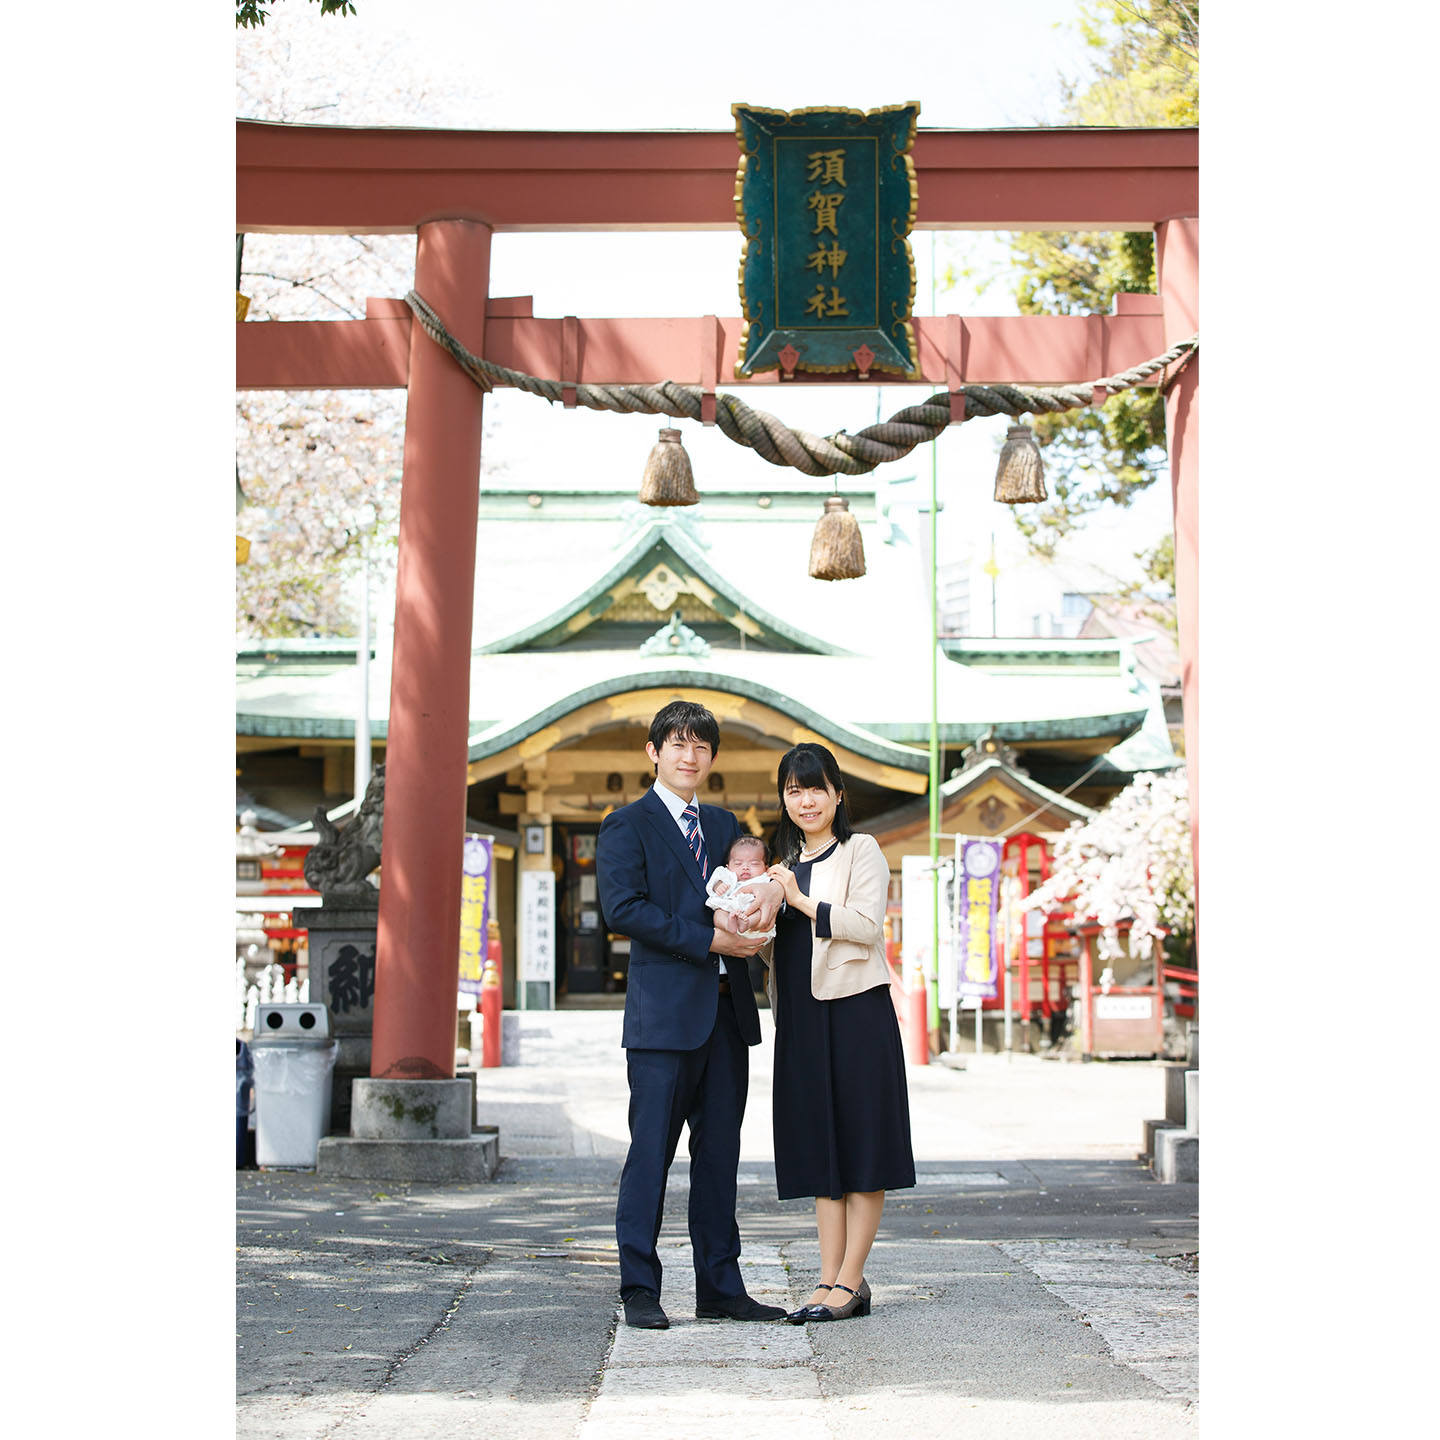 須賀神社の鳥居前で撮影